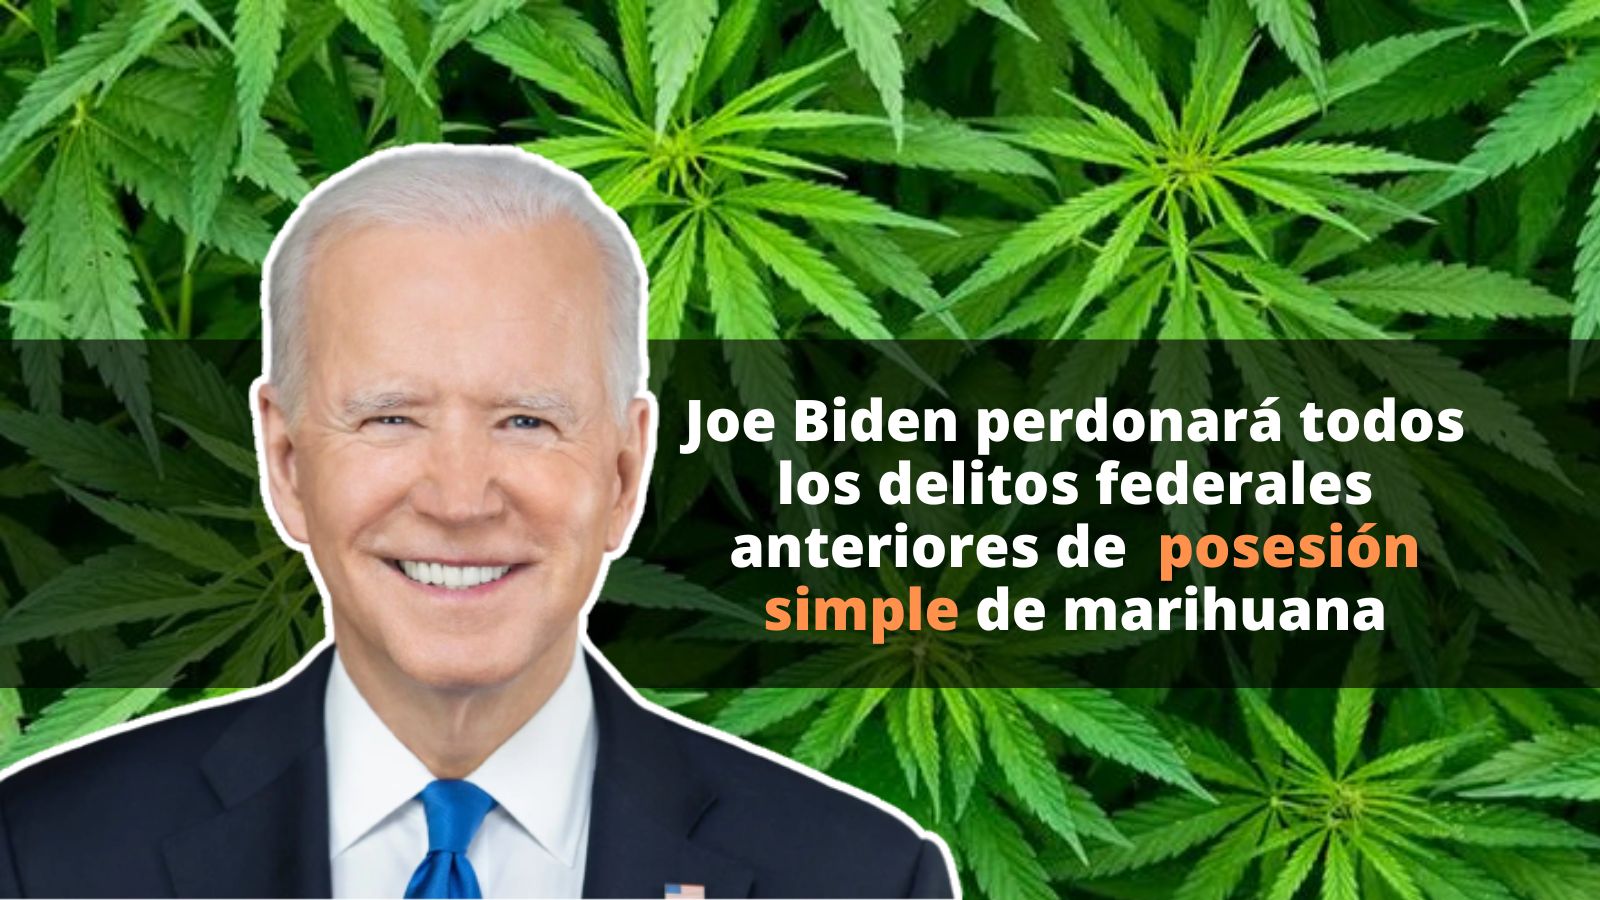 Joe Biden perdonará a presos por posesión de Marihuana